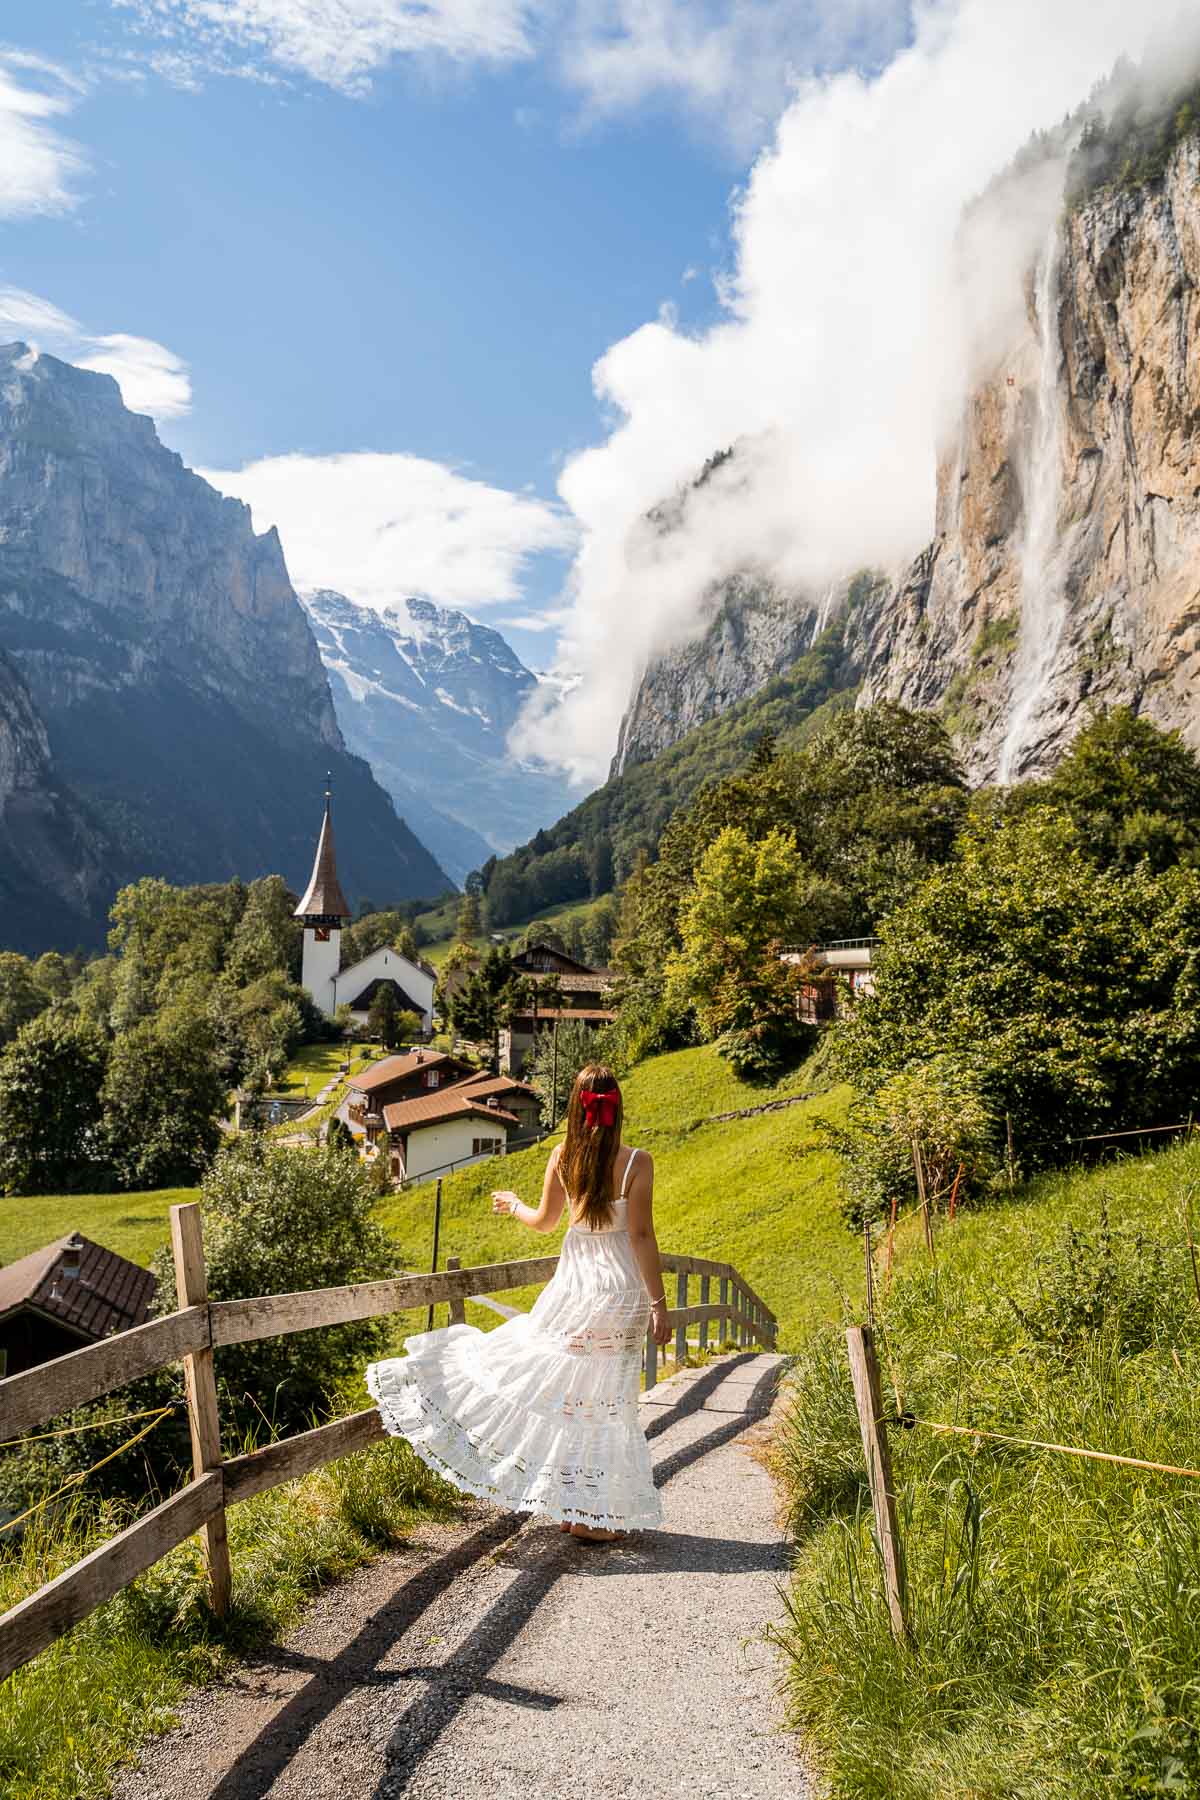 Girl in a white dress twirling in the fairytale town of Lauterbrunnen in Switzerland